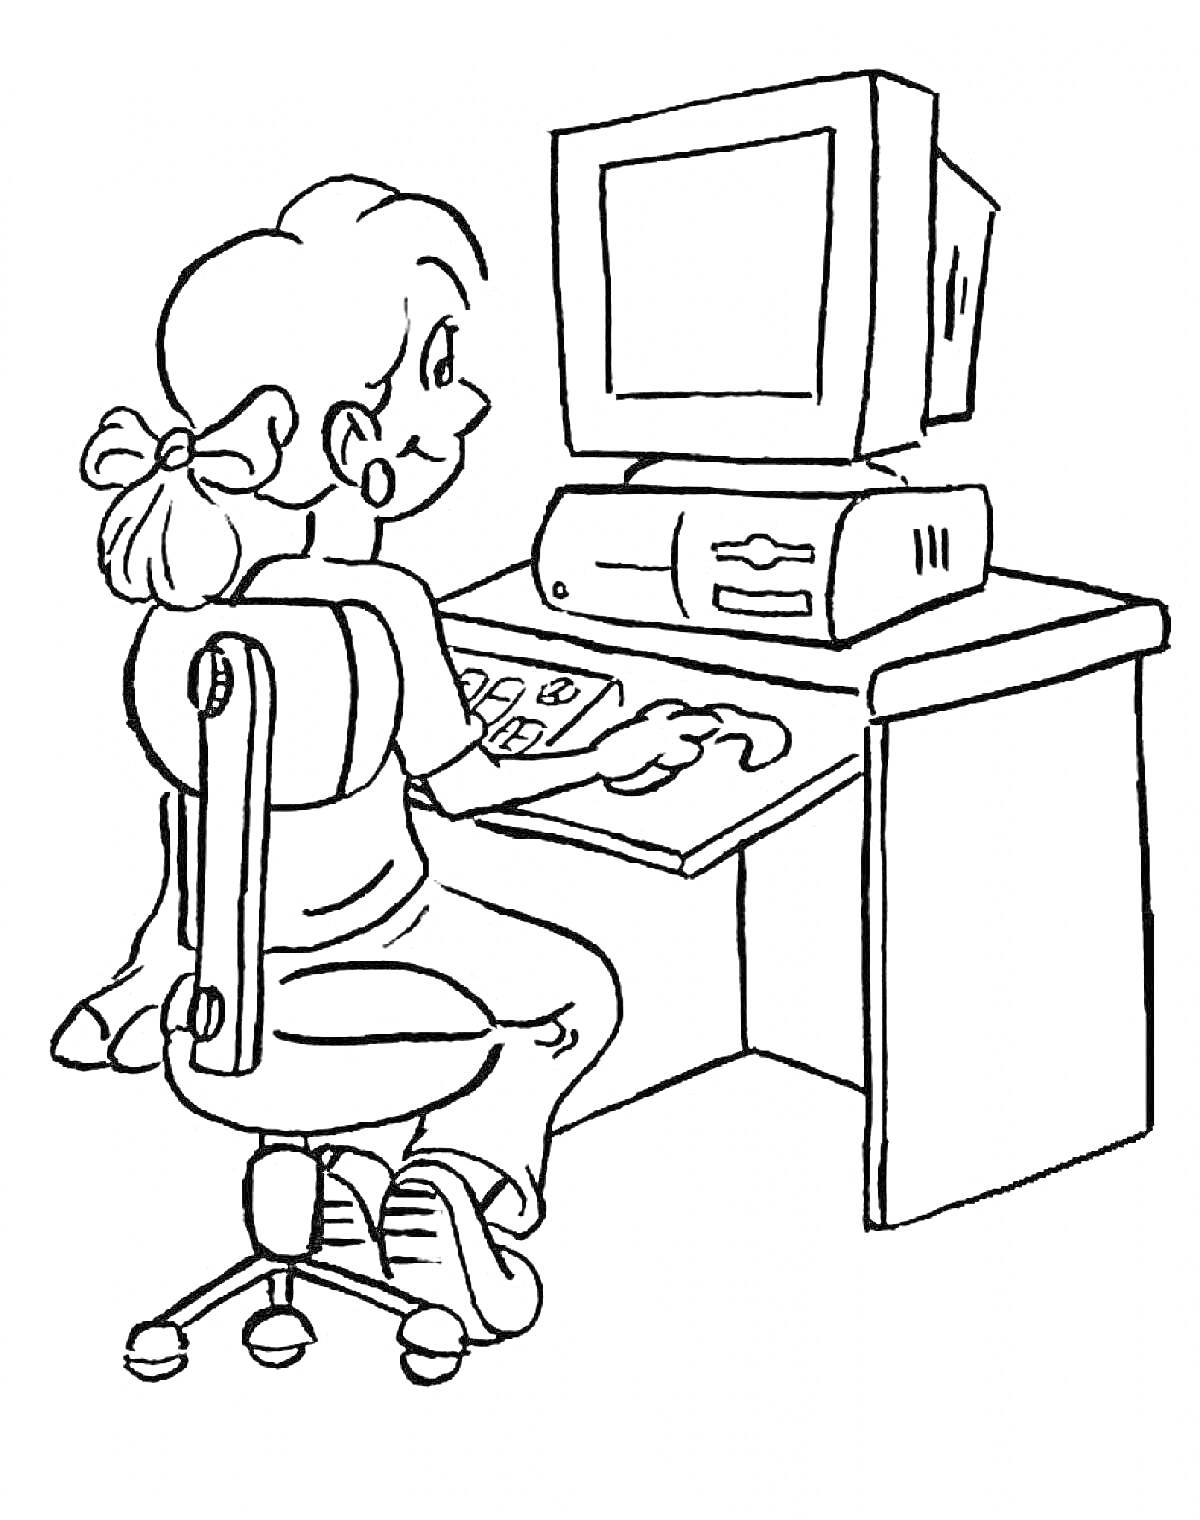 Раскраска Девочка за компьютером с монитором, системным блоком и клавиатурой на рабочем столе